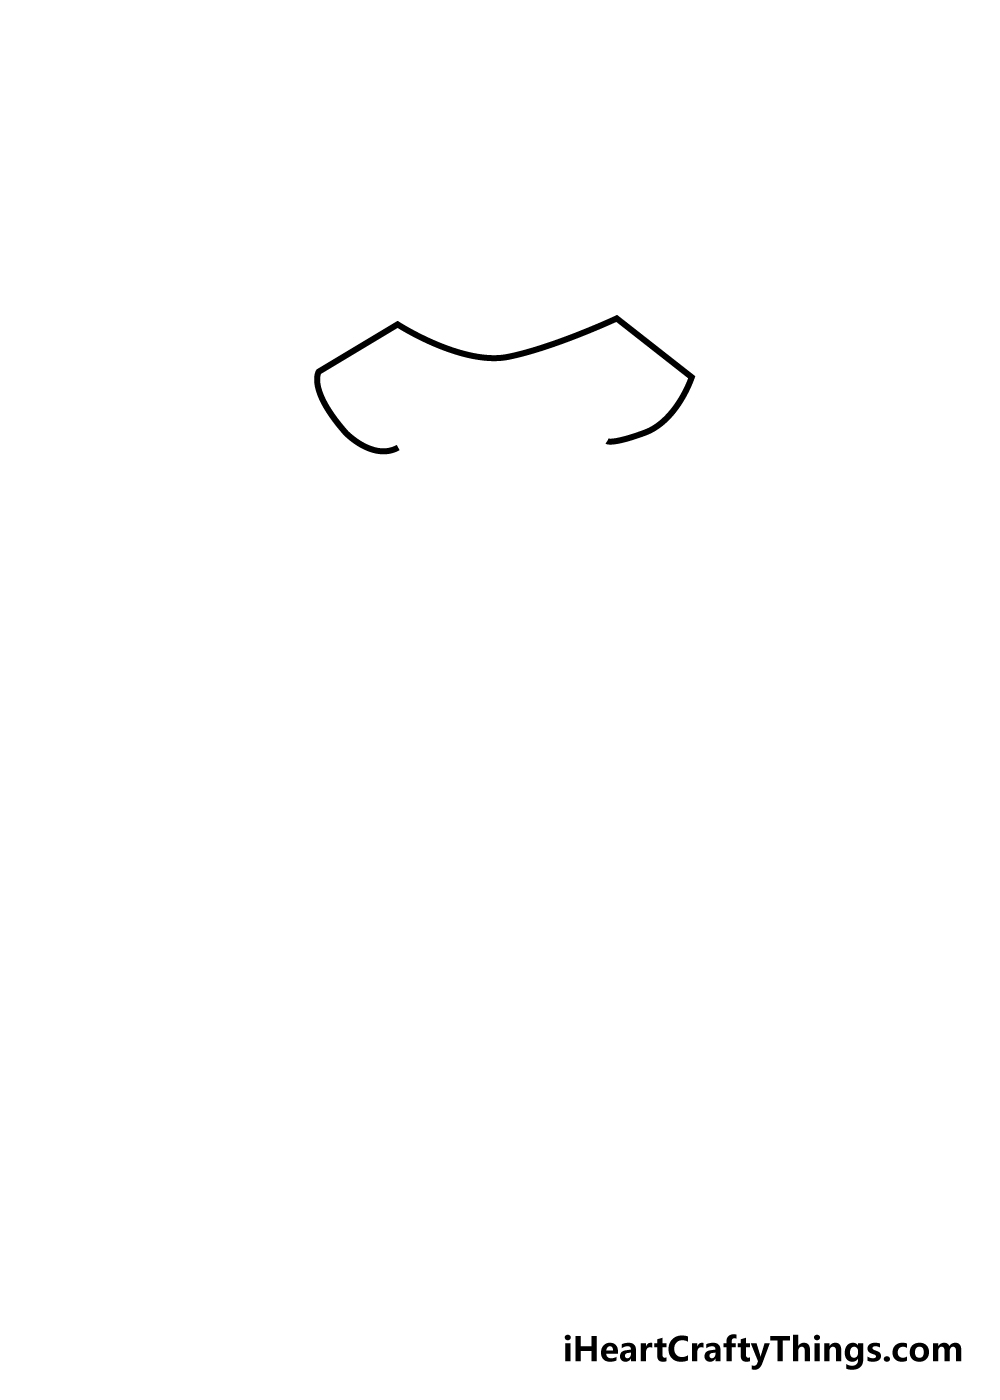 dress 1 - Hướng dẫn cách vẽ váy đơn giản với 7 bước cơ bản